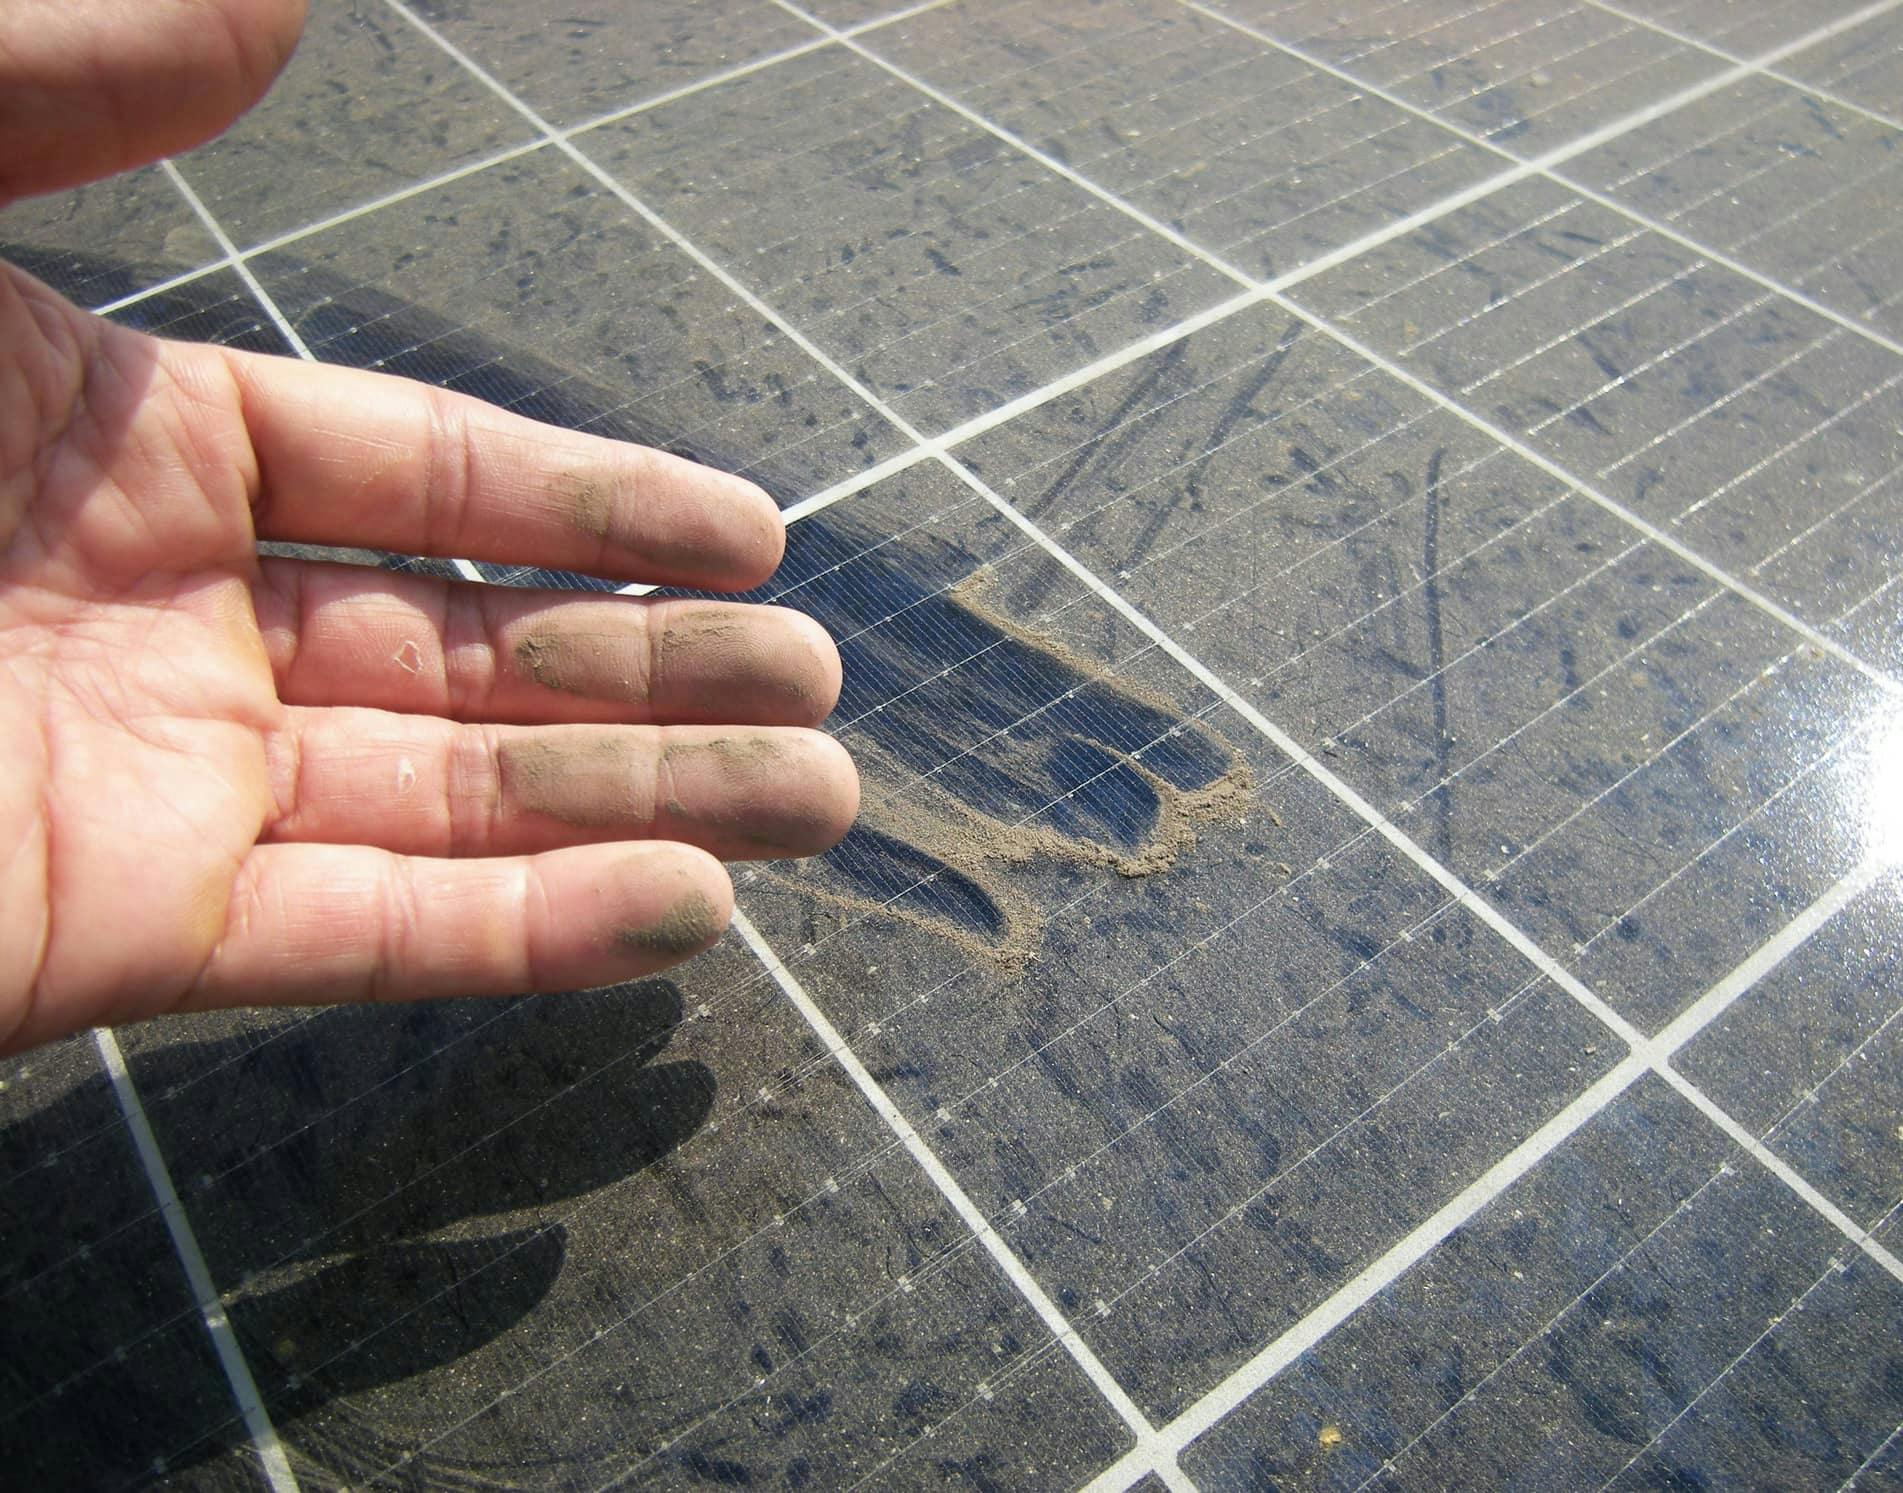 Suciedad y polvo en placas solares: ¿Cómo afectan al rendimiento?